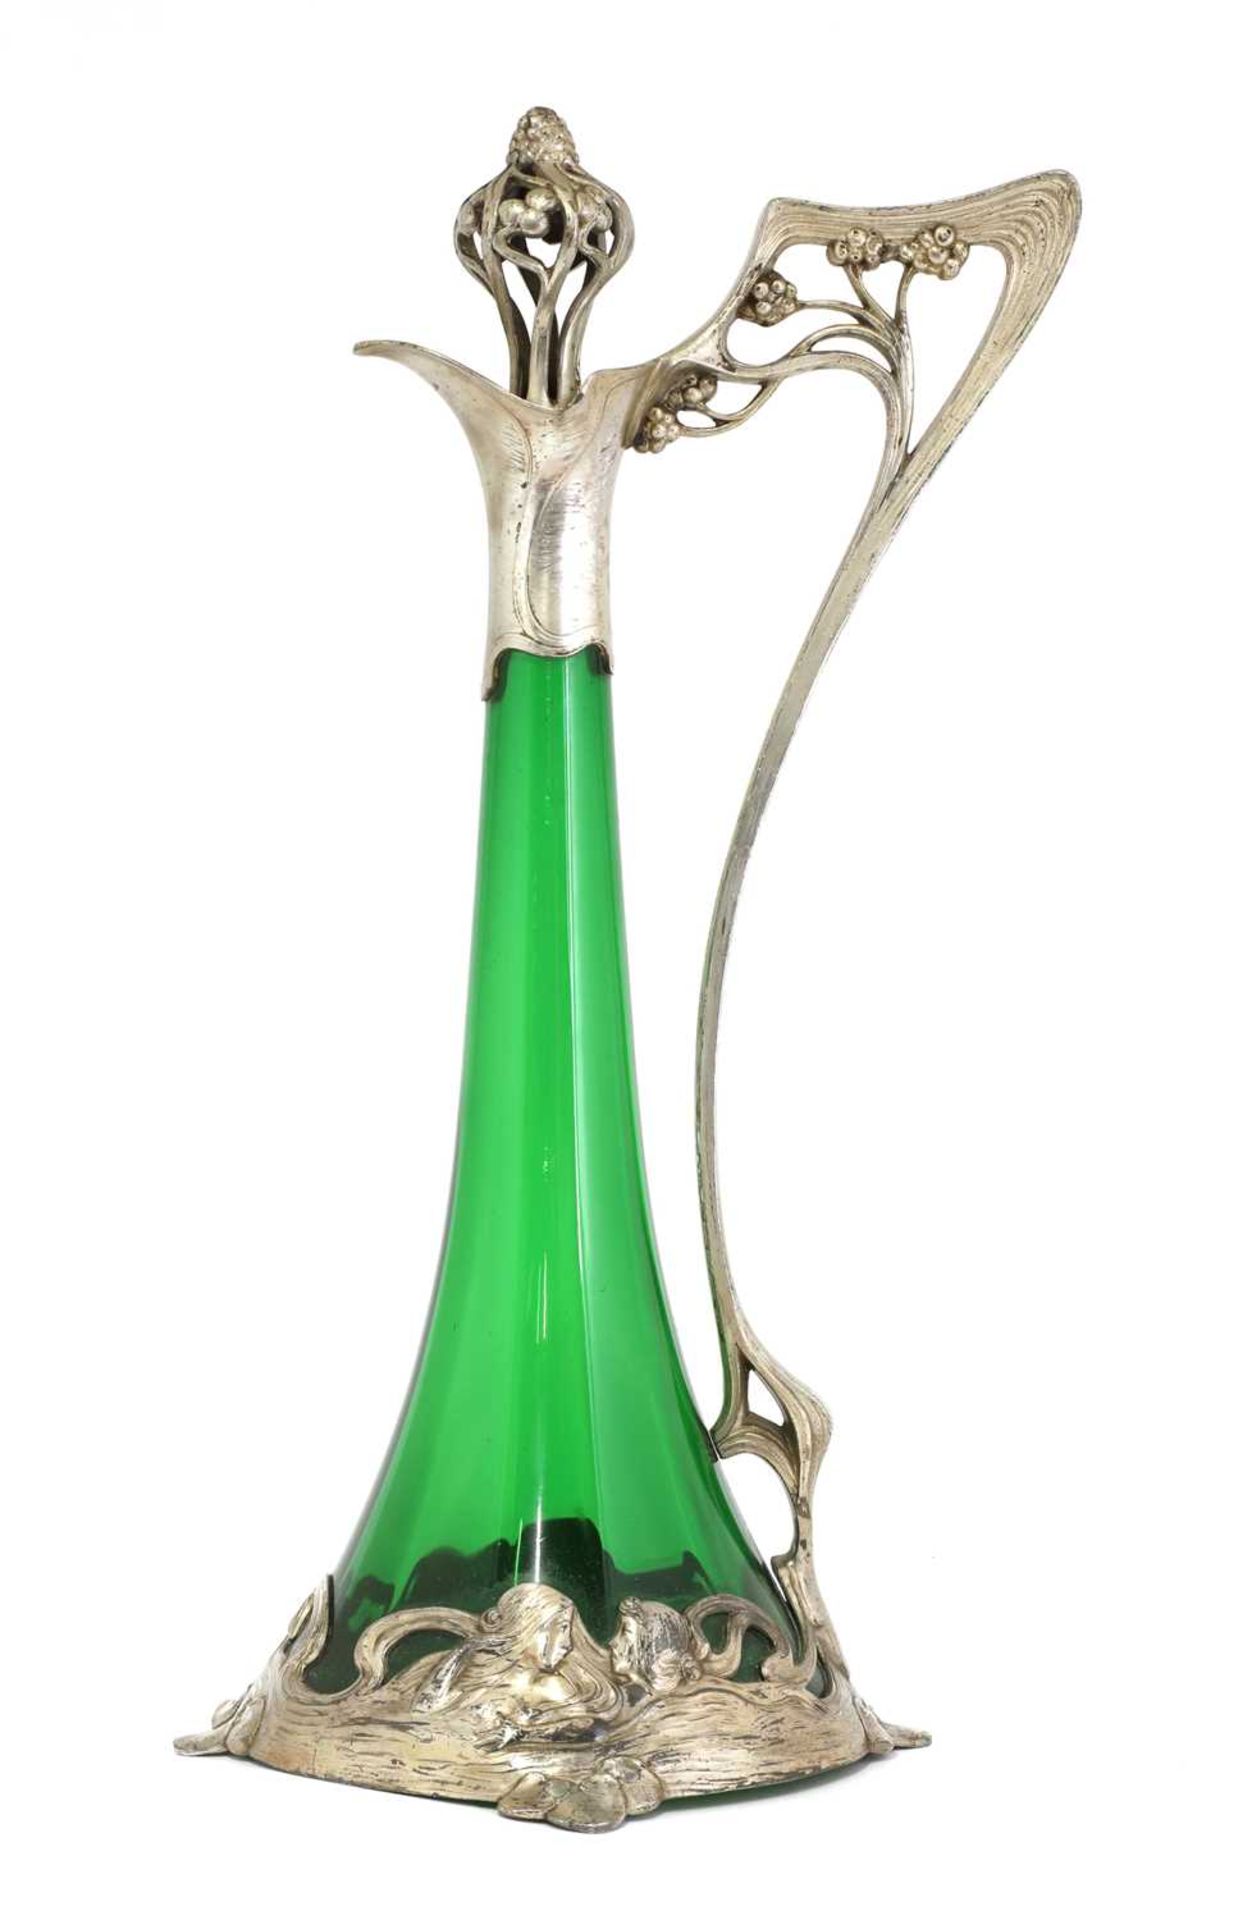 An Art Nouveau WMF claret jug and stopper,